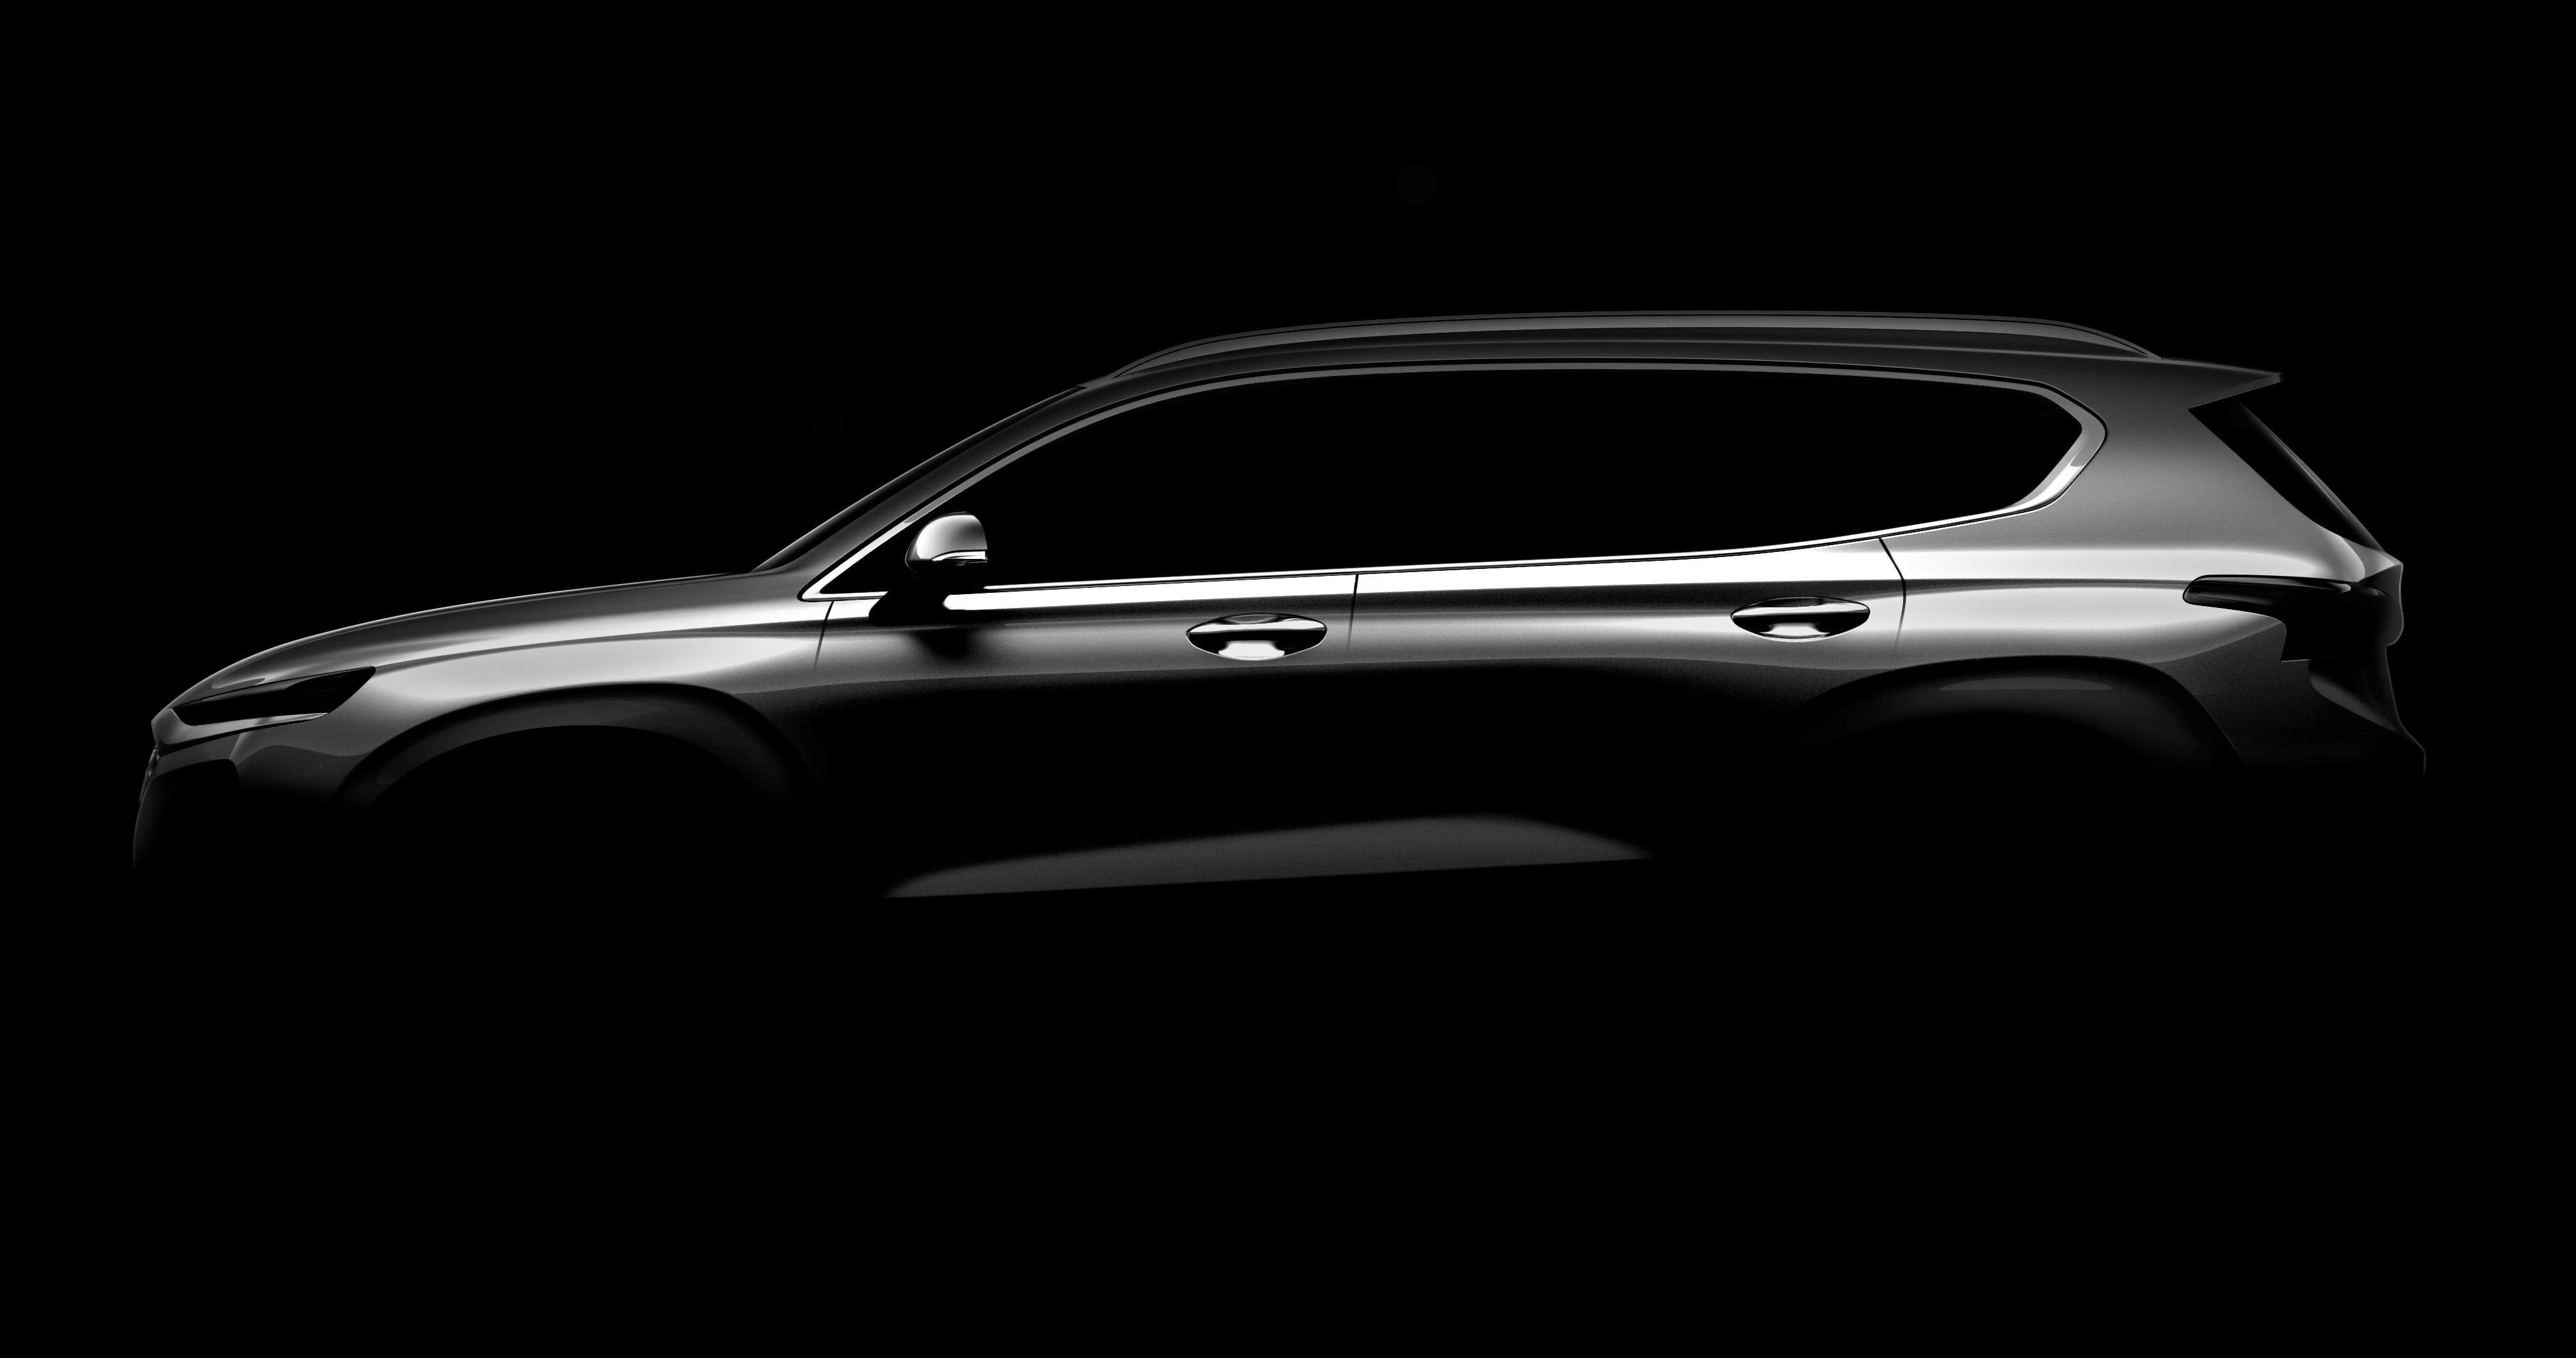 Hyundai Motor публикует первое изображение Santa Fe четвертого поколения